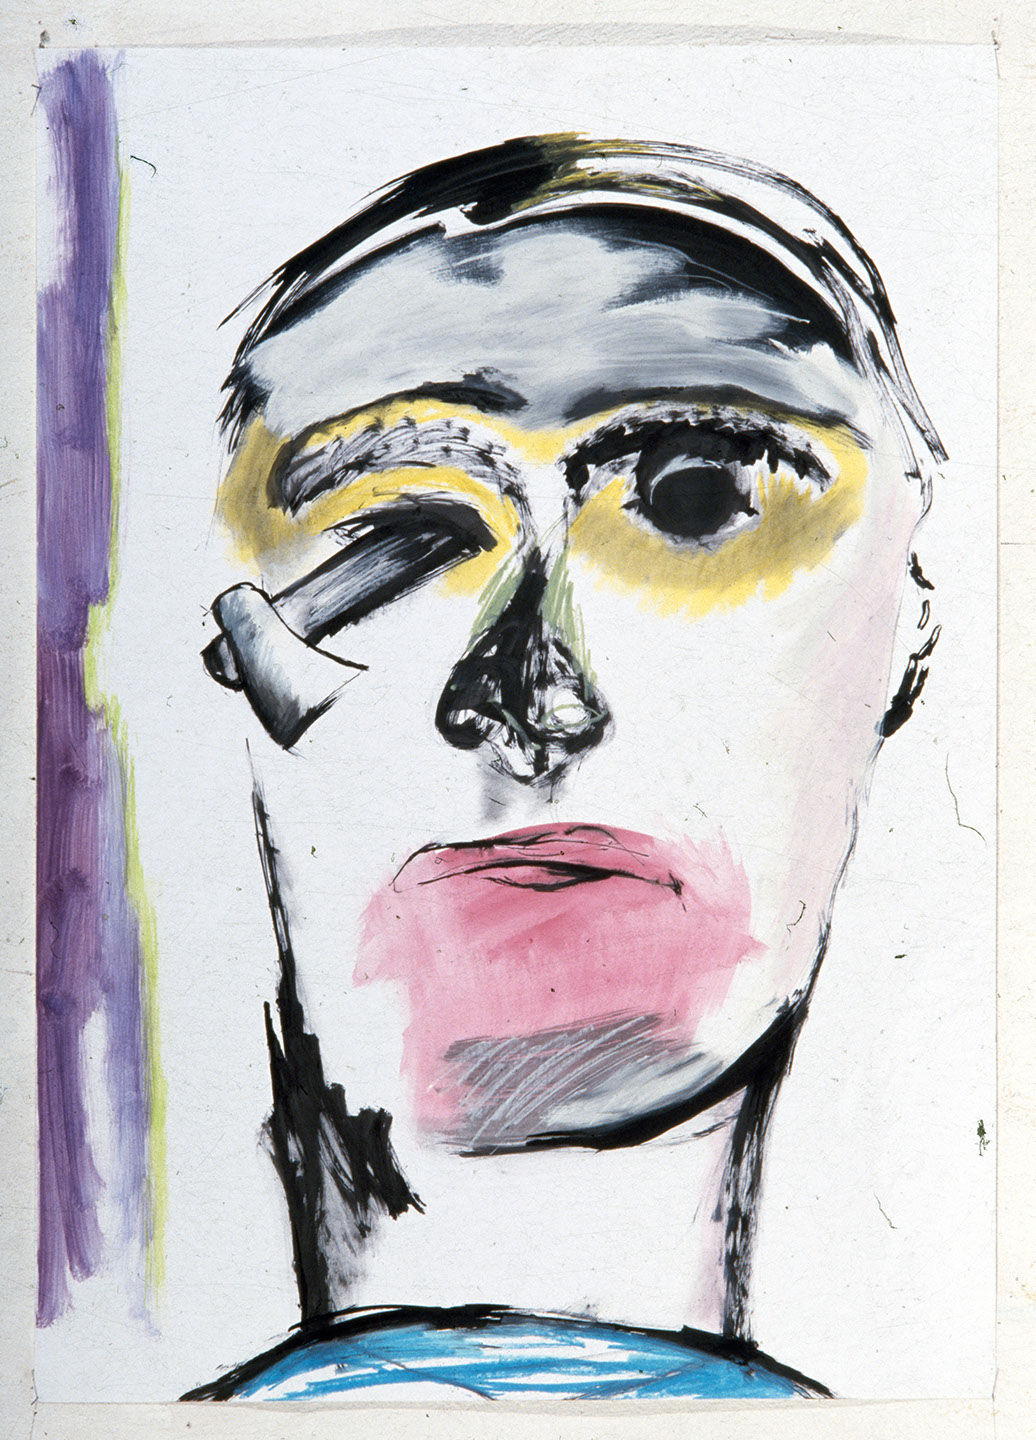 Τιτλος: Πρόσωπο 6
Υλικά: Ακρυλικό, Μελάνι, Λαδοπαστέλ σε χαρτί
Μέγεθος: 100x70 cm
Έτος: 1986